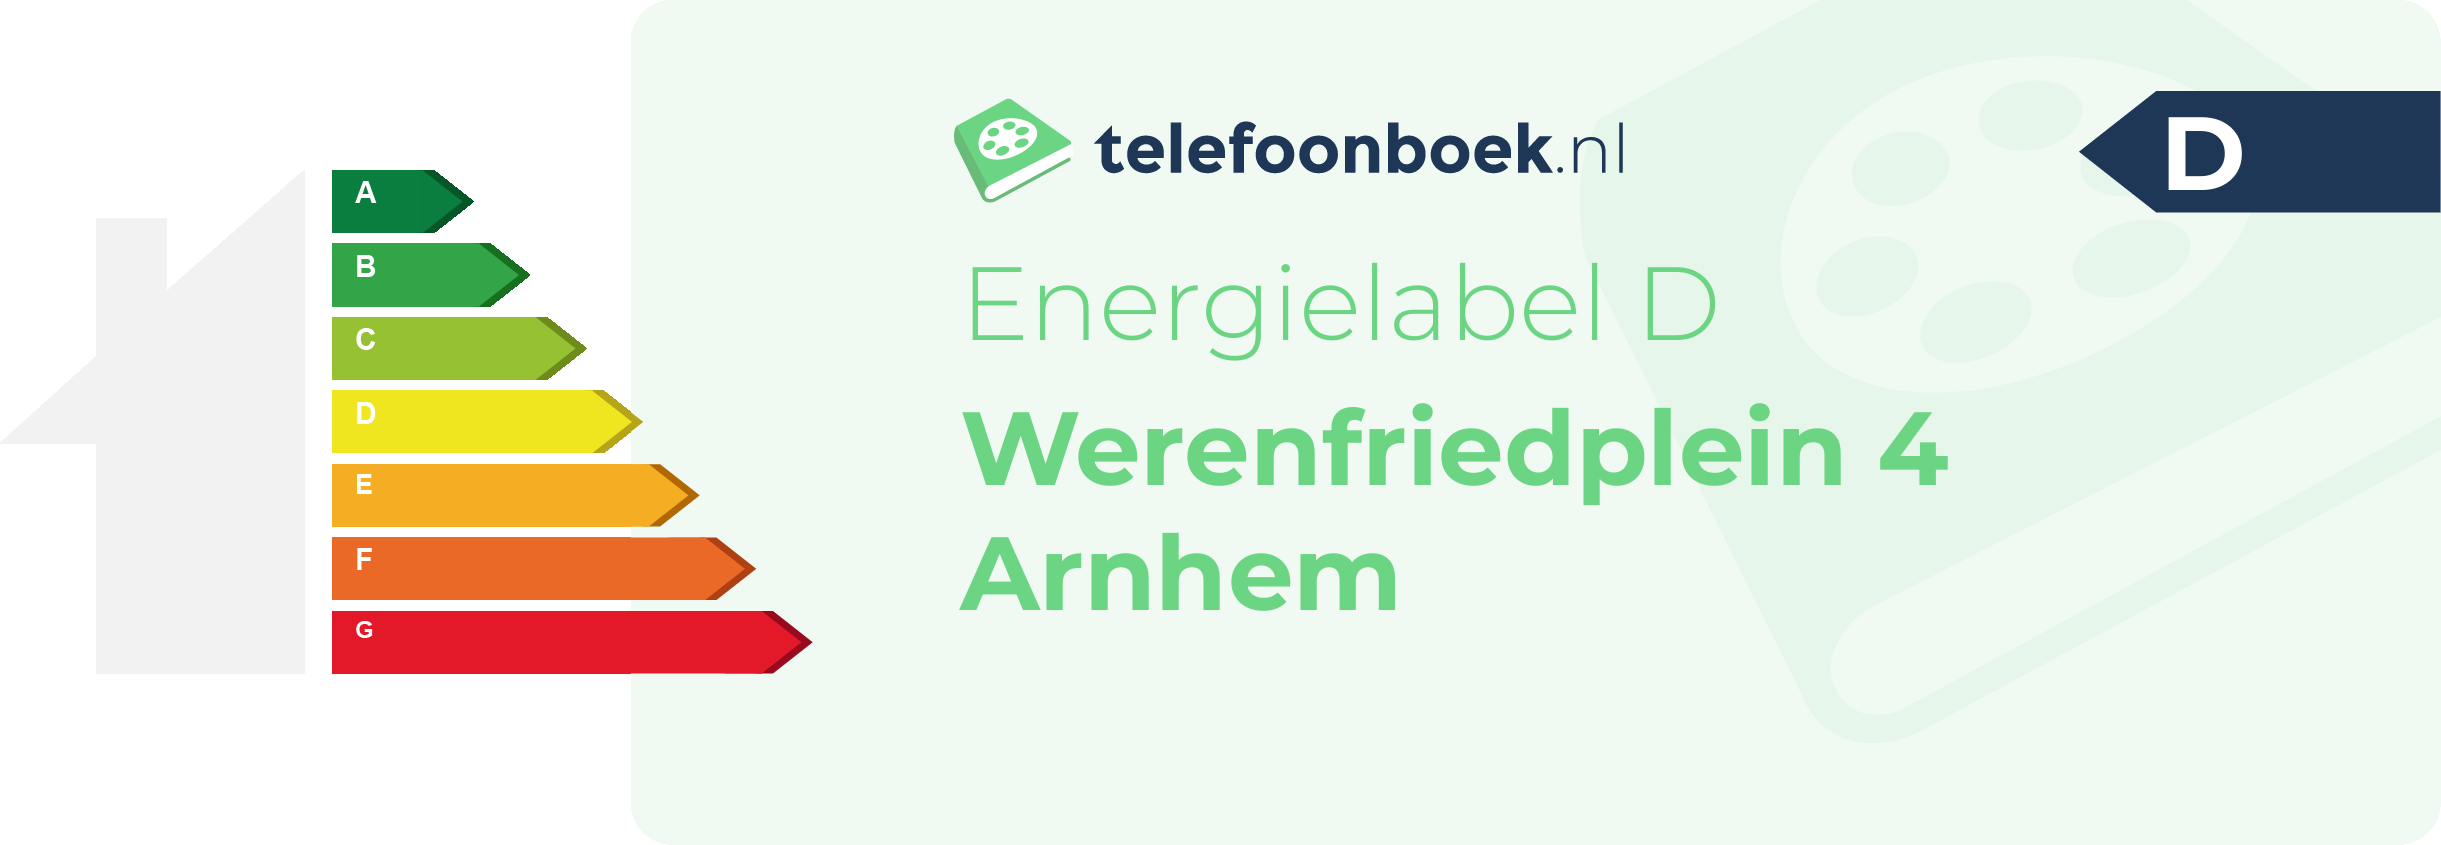 Energielabel Werenfriedplein 4 Arnhem